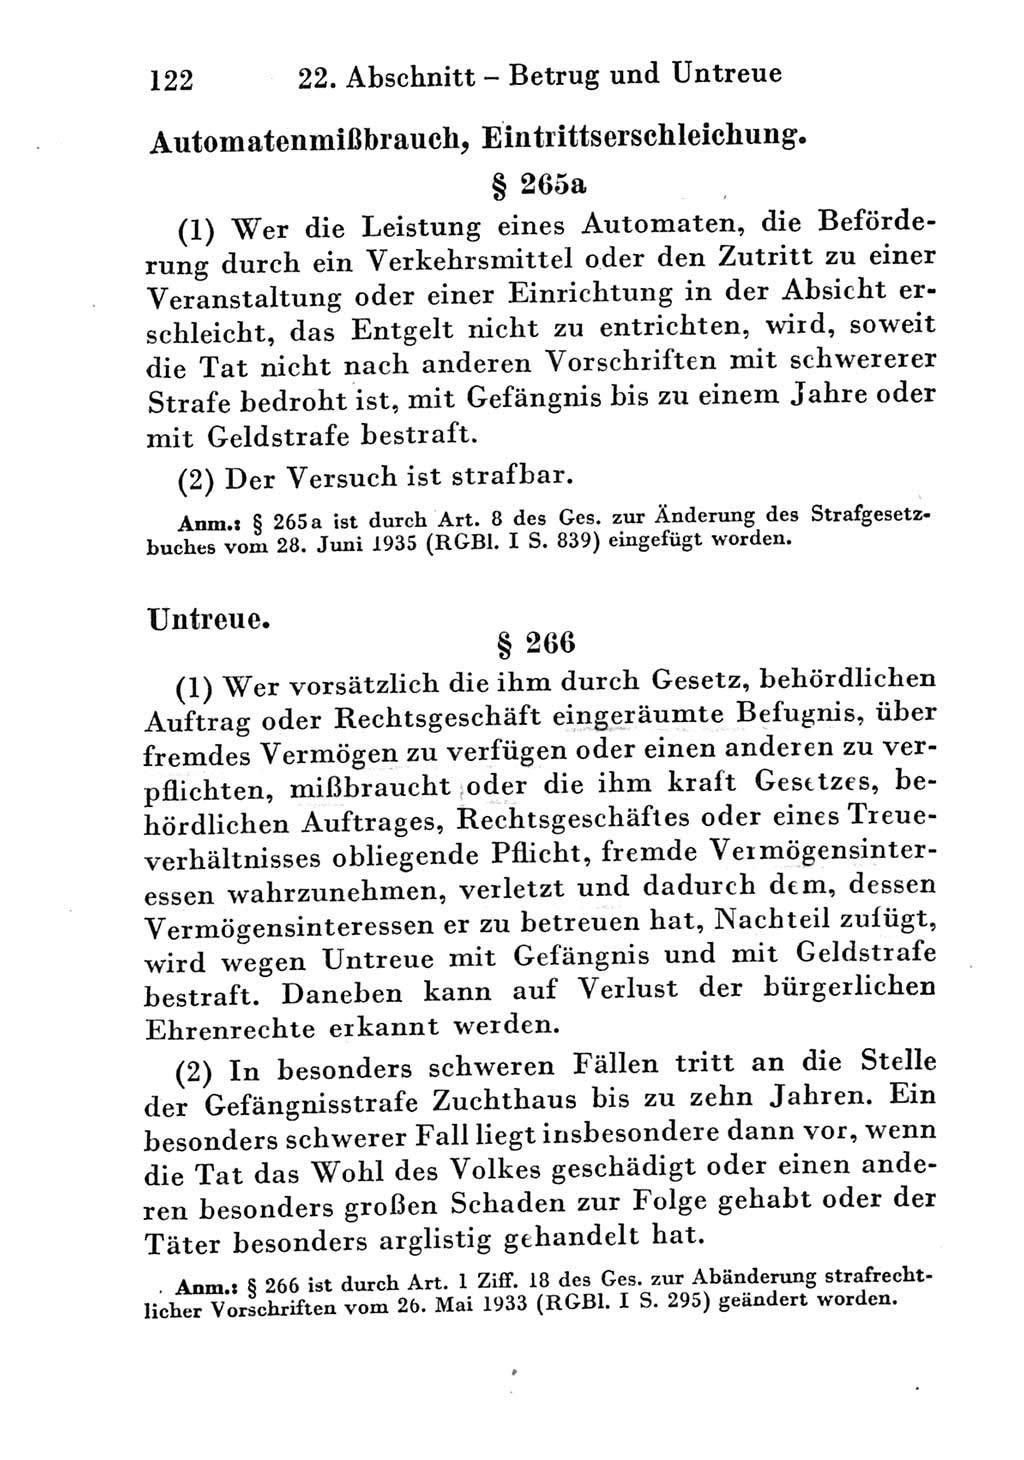 Strafgesetzbuch (StGB) und andere Strafgesetze [Deutsche Demokratische Republik (DDR)] 1951, Seite 122 (StGB Strafges. DDR 1951, S. 122)